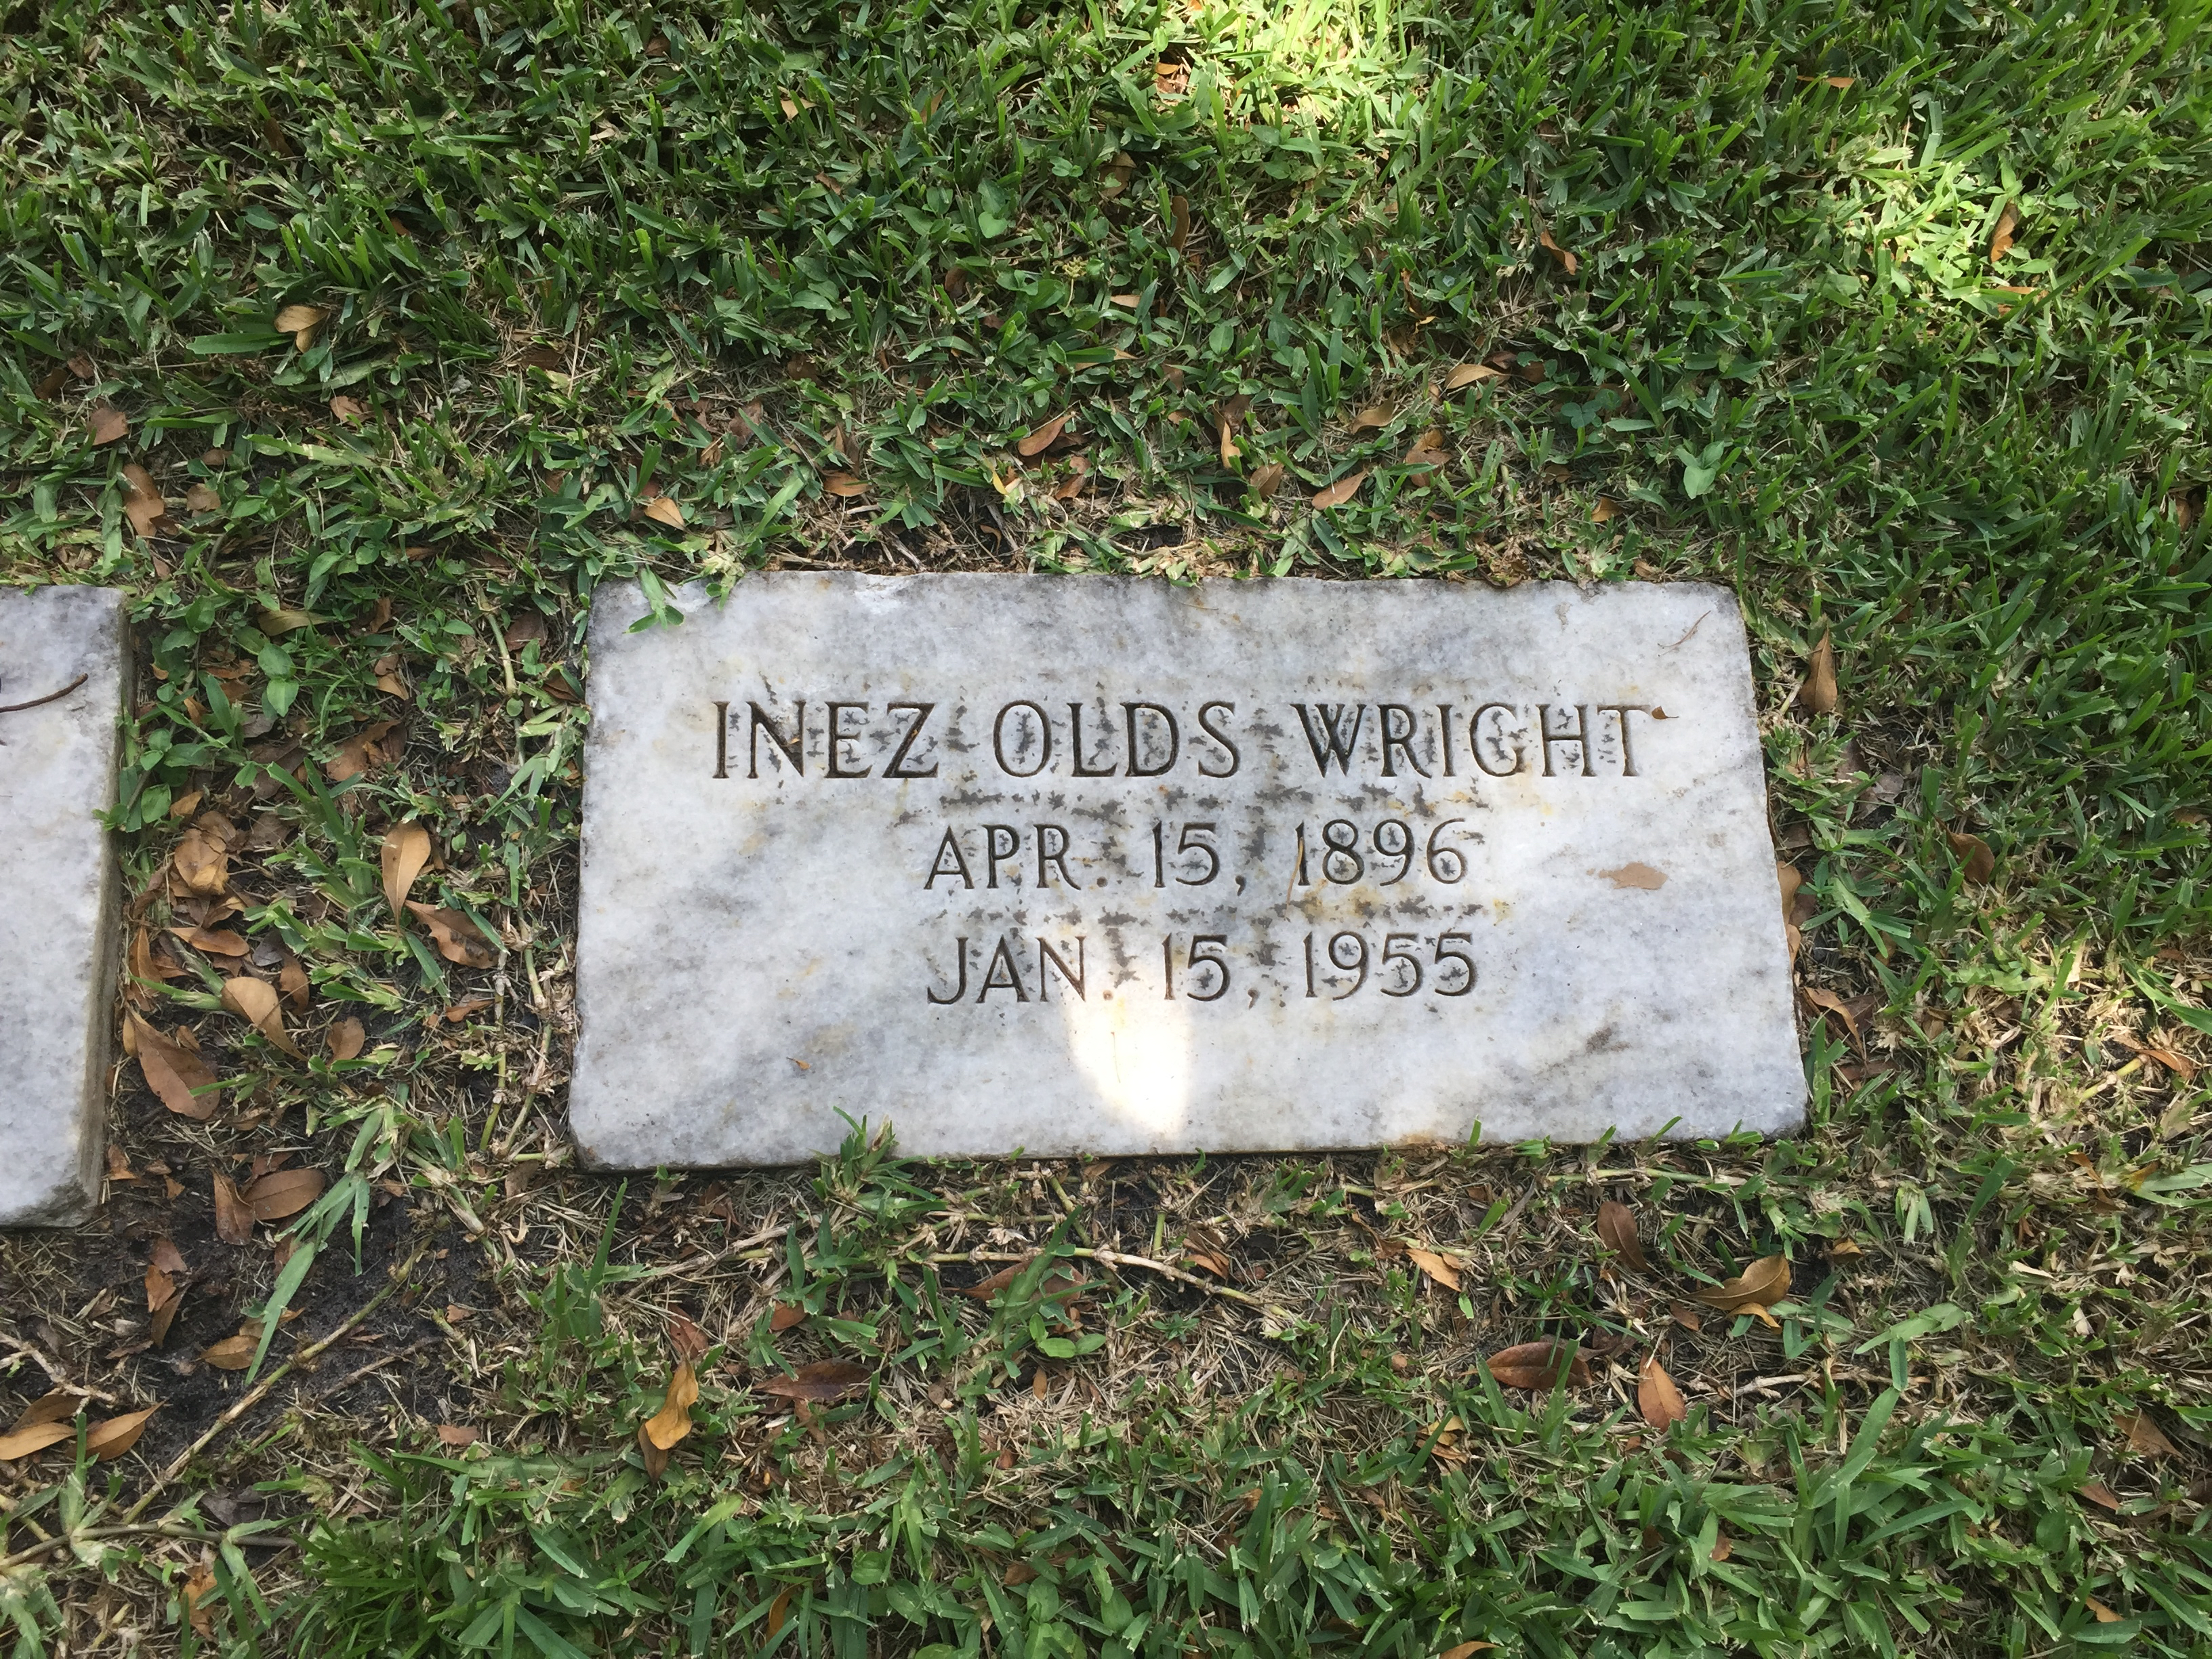 Inez Olds Wright